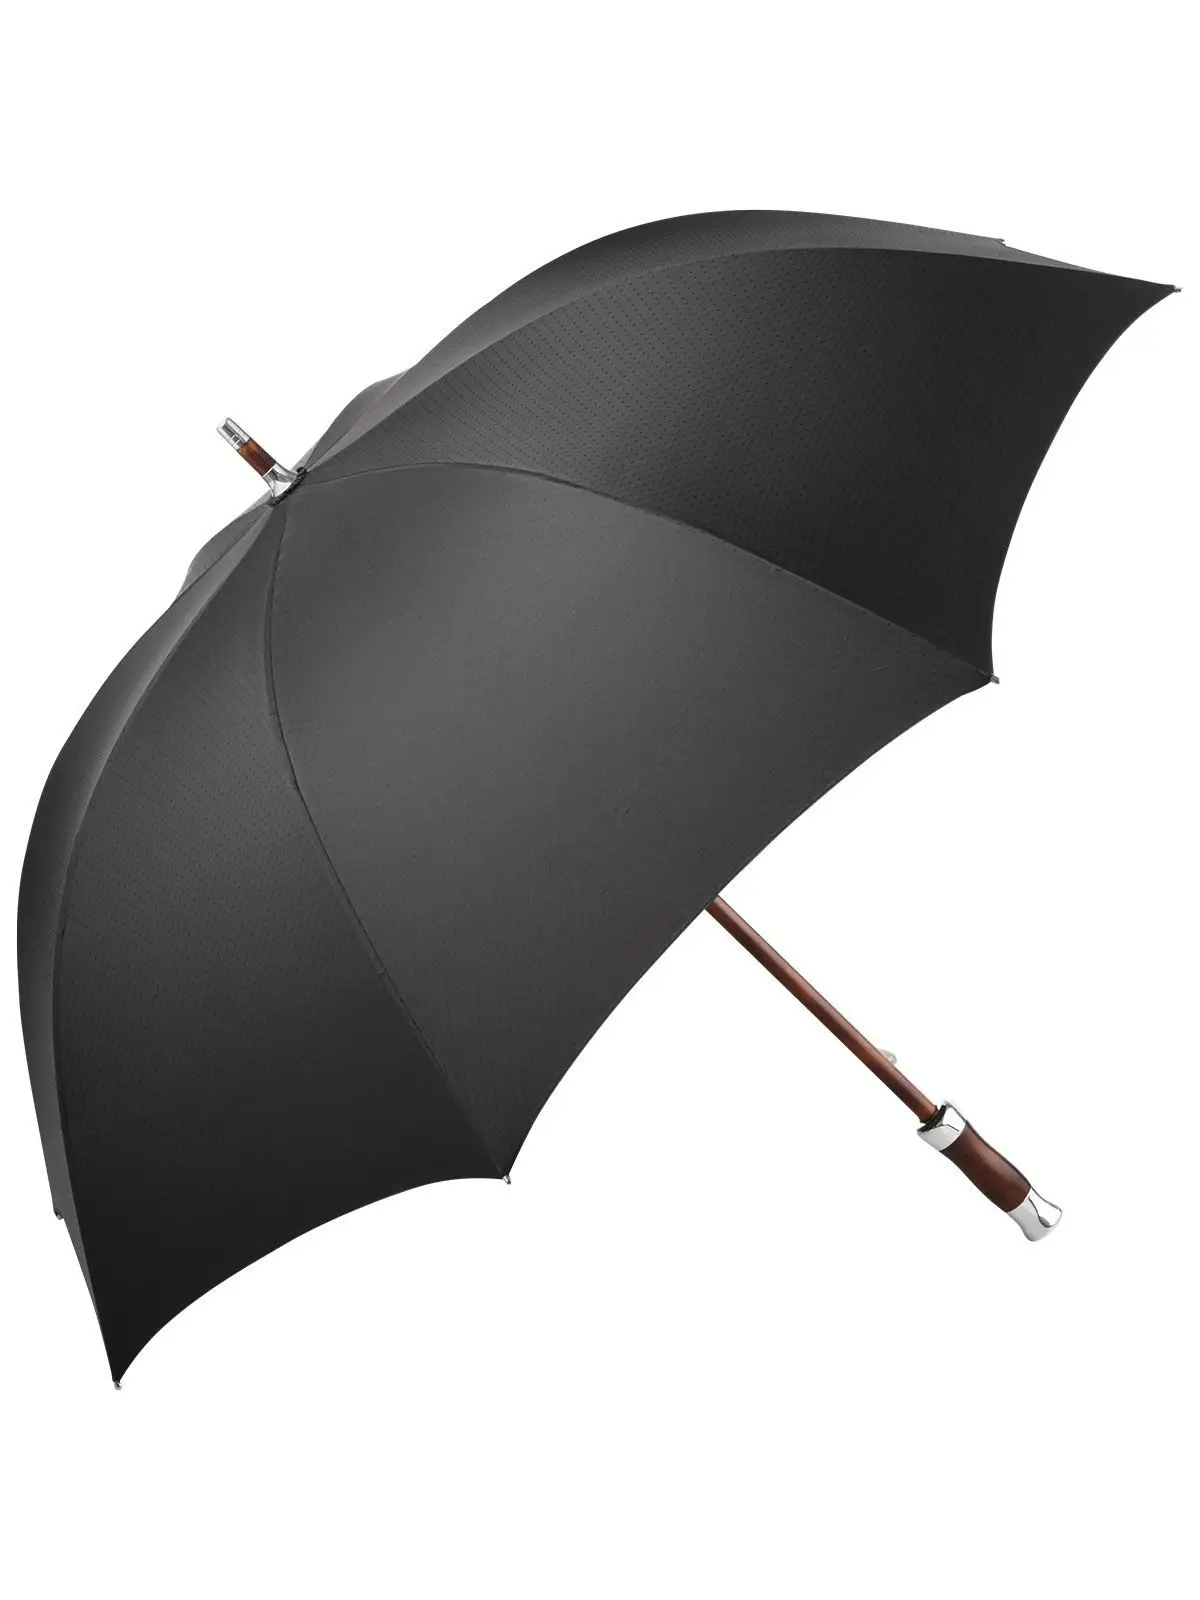 Midsize umbrella FARE®-Exklusiv 60th Edition